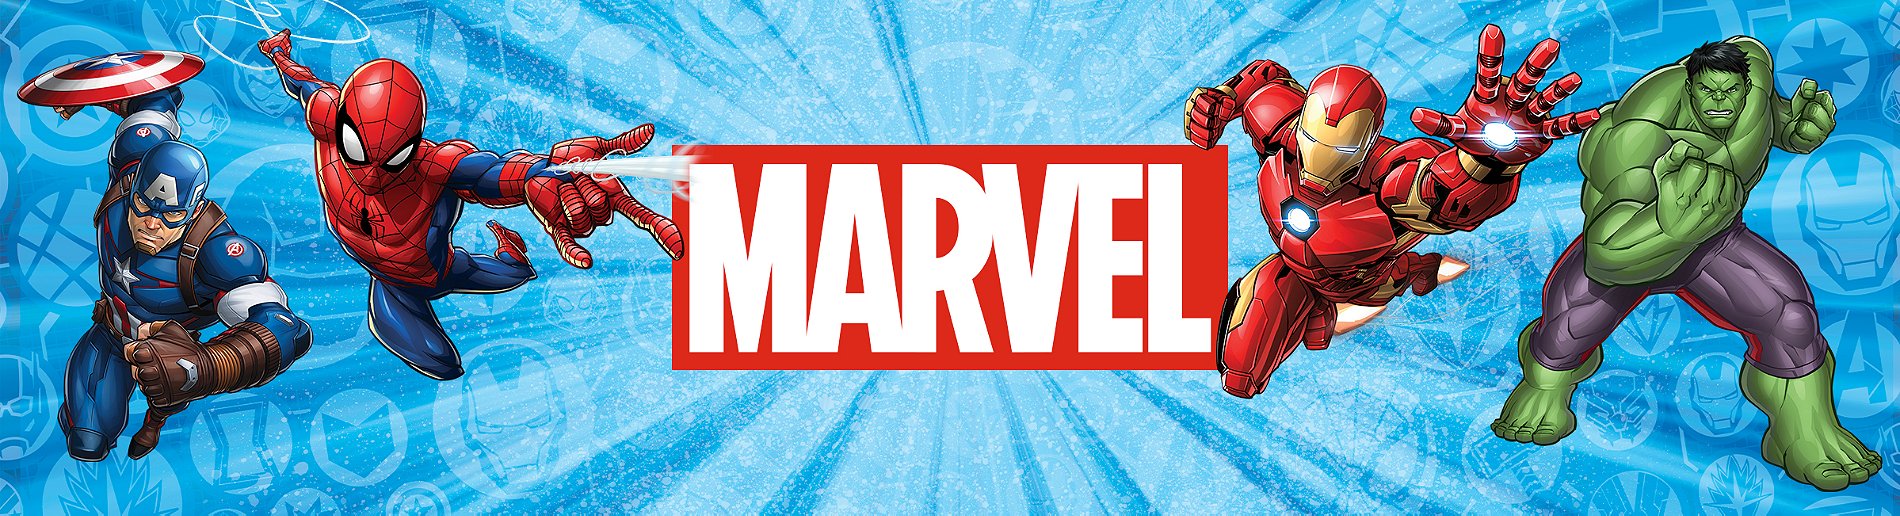 Marvel Spider-Man, Spider-Mobile, véhicule et figurine Miles Morales à  l'échelle de 15 cm, jouets Marvel, dès 4 ans au meilleur prix